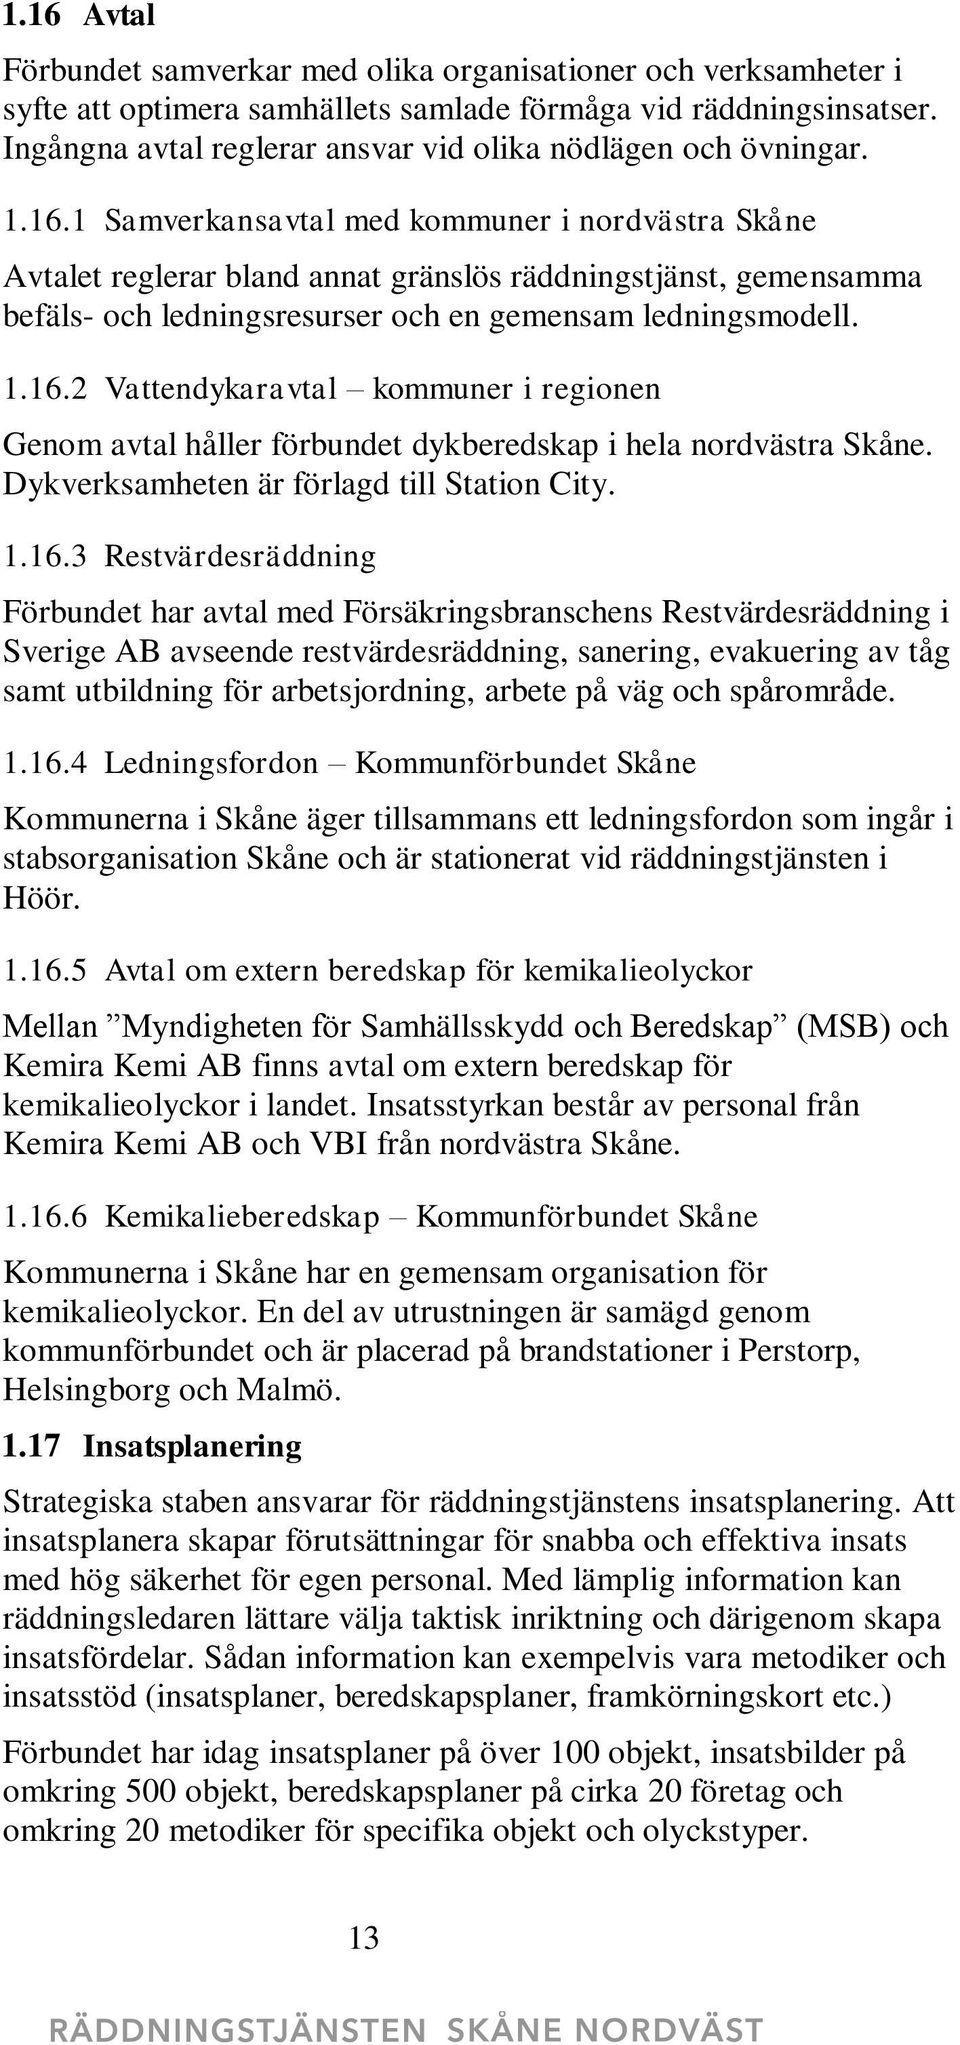 1 Samverkansavtal med kommuner i nordvästra Skåne Avtalet reglerar bland annat gränslös räddningstjänst, gemensamma befäls- och ledningsresurser och en gemensam ledningsmodell. 1.16.